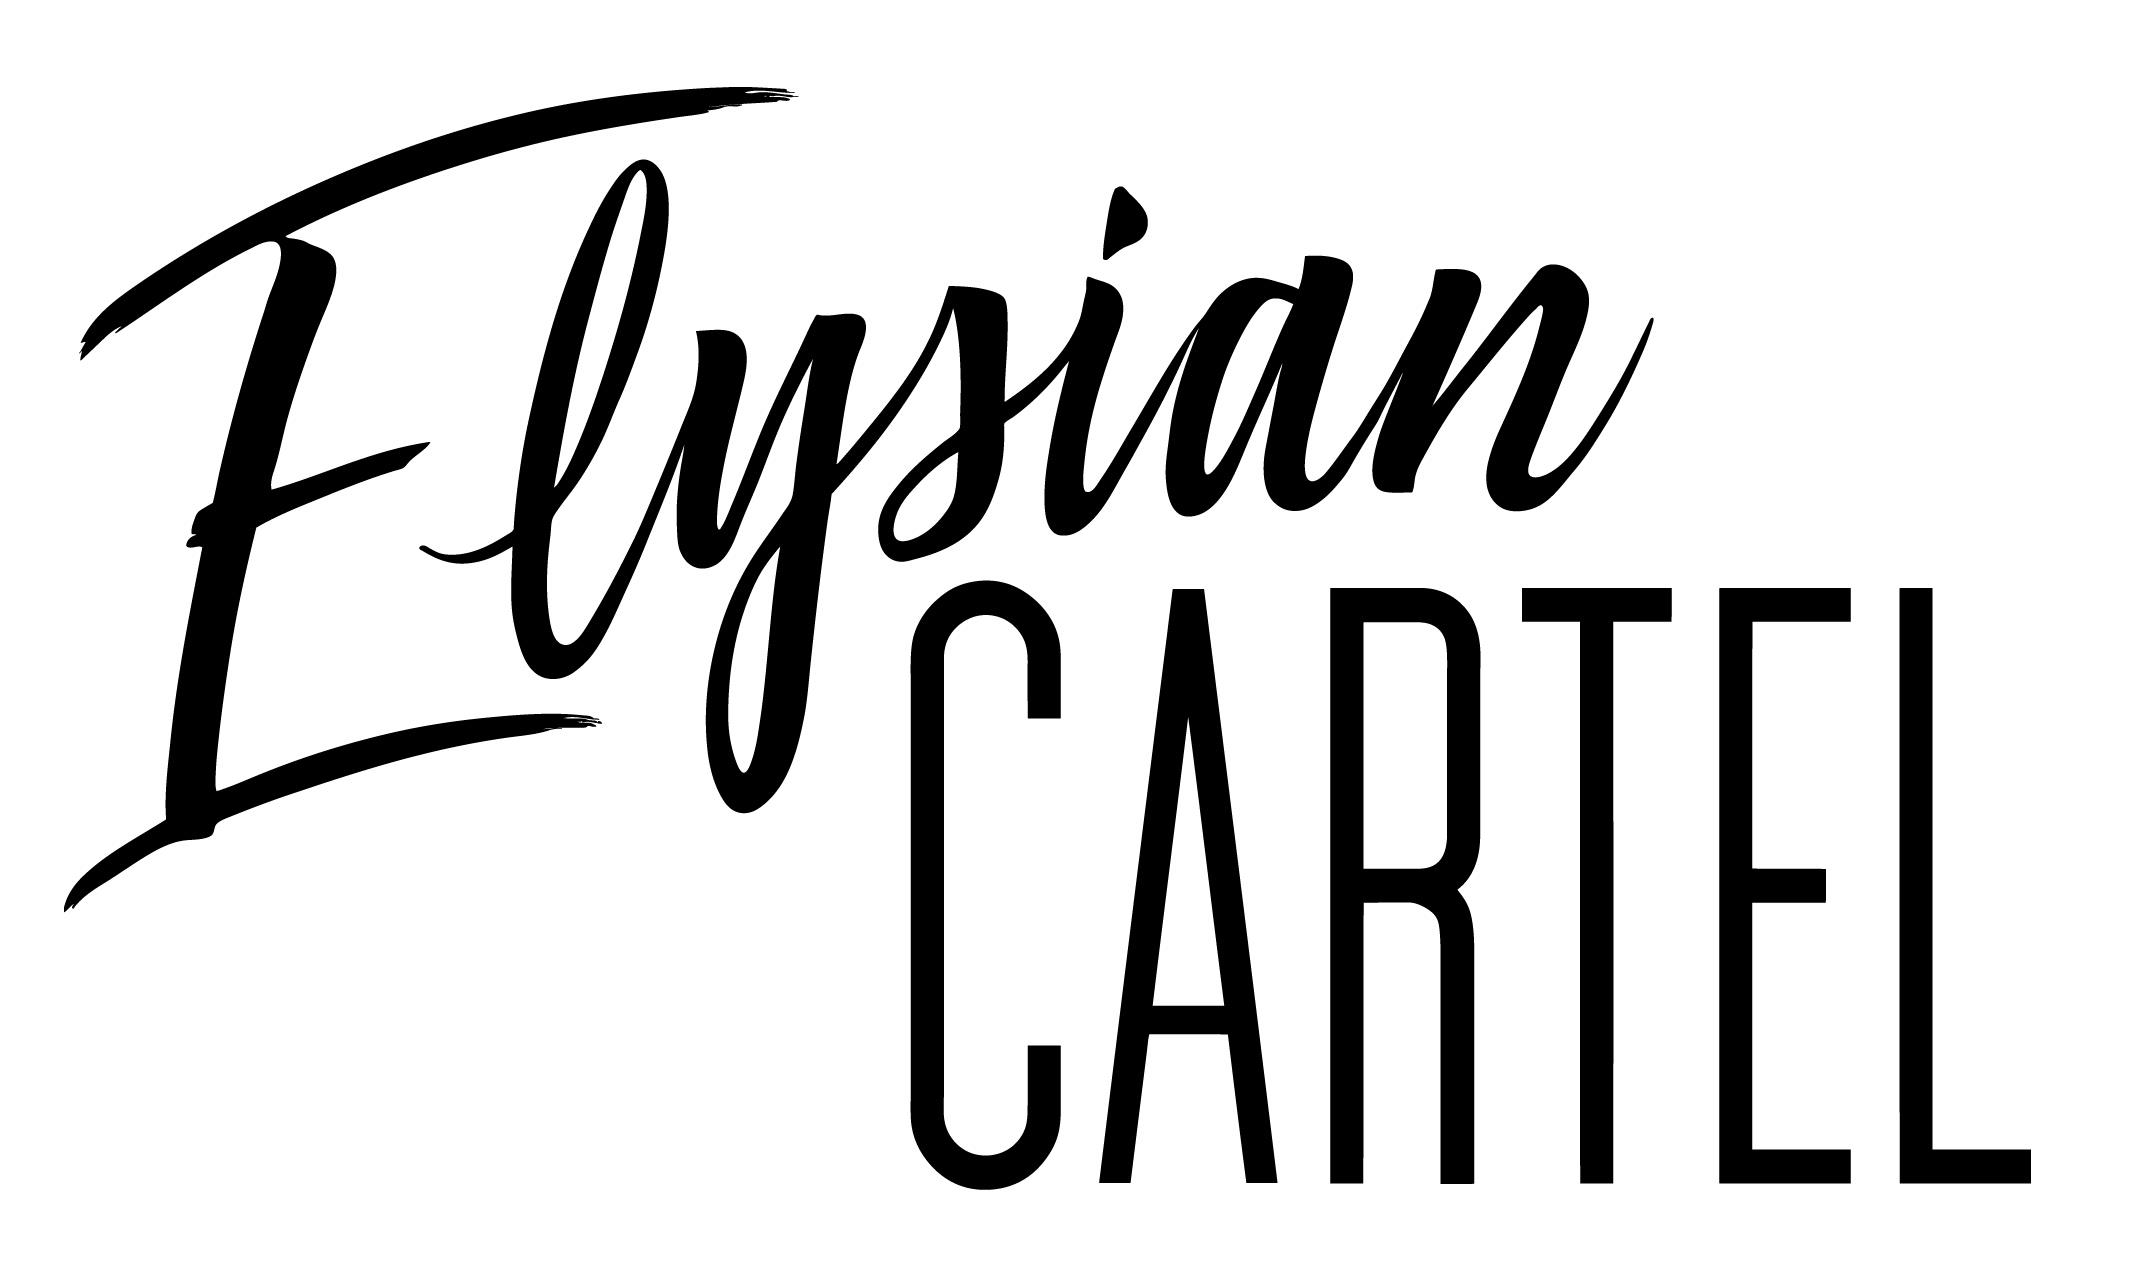 Elysian Cartel